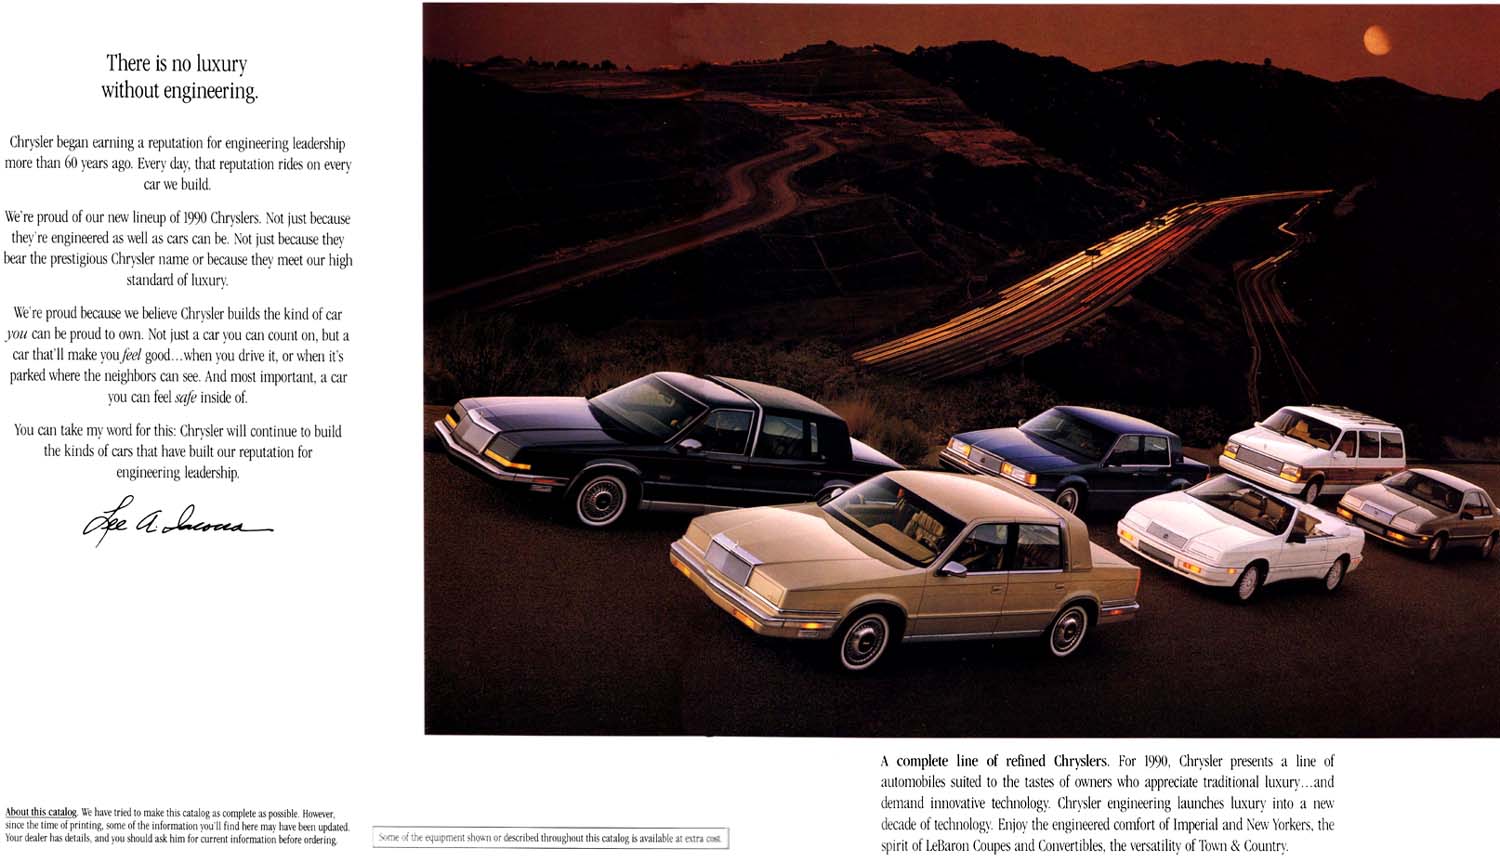 1990 Chrysler Full Line Prestige-02-03